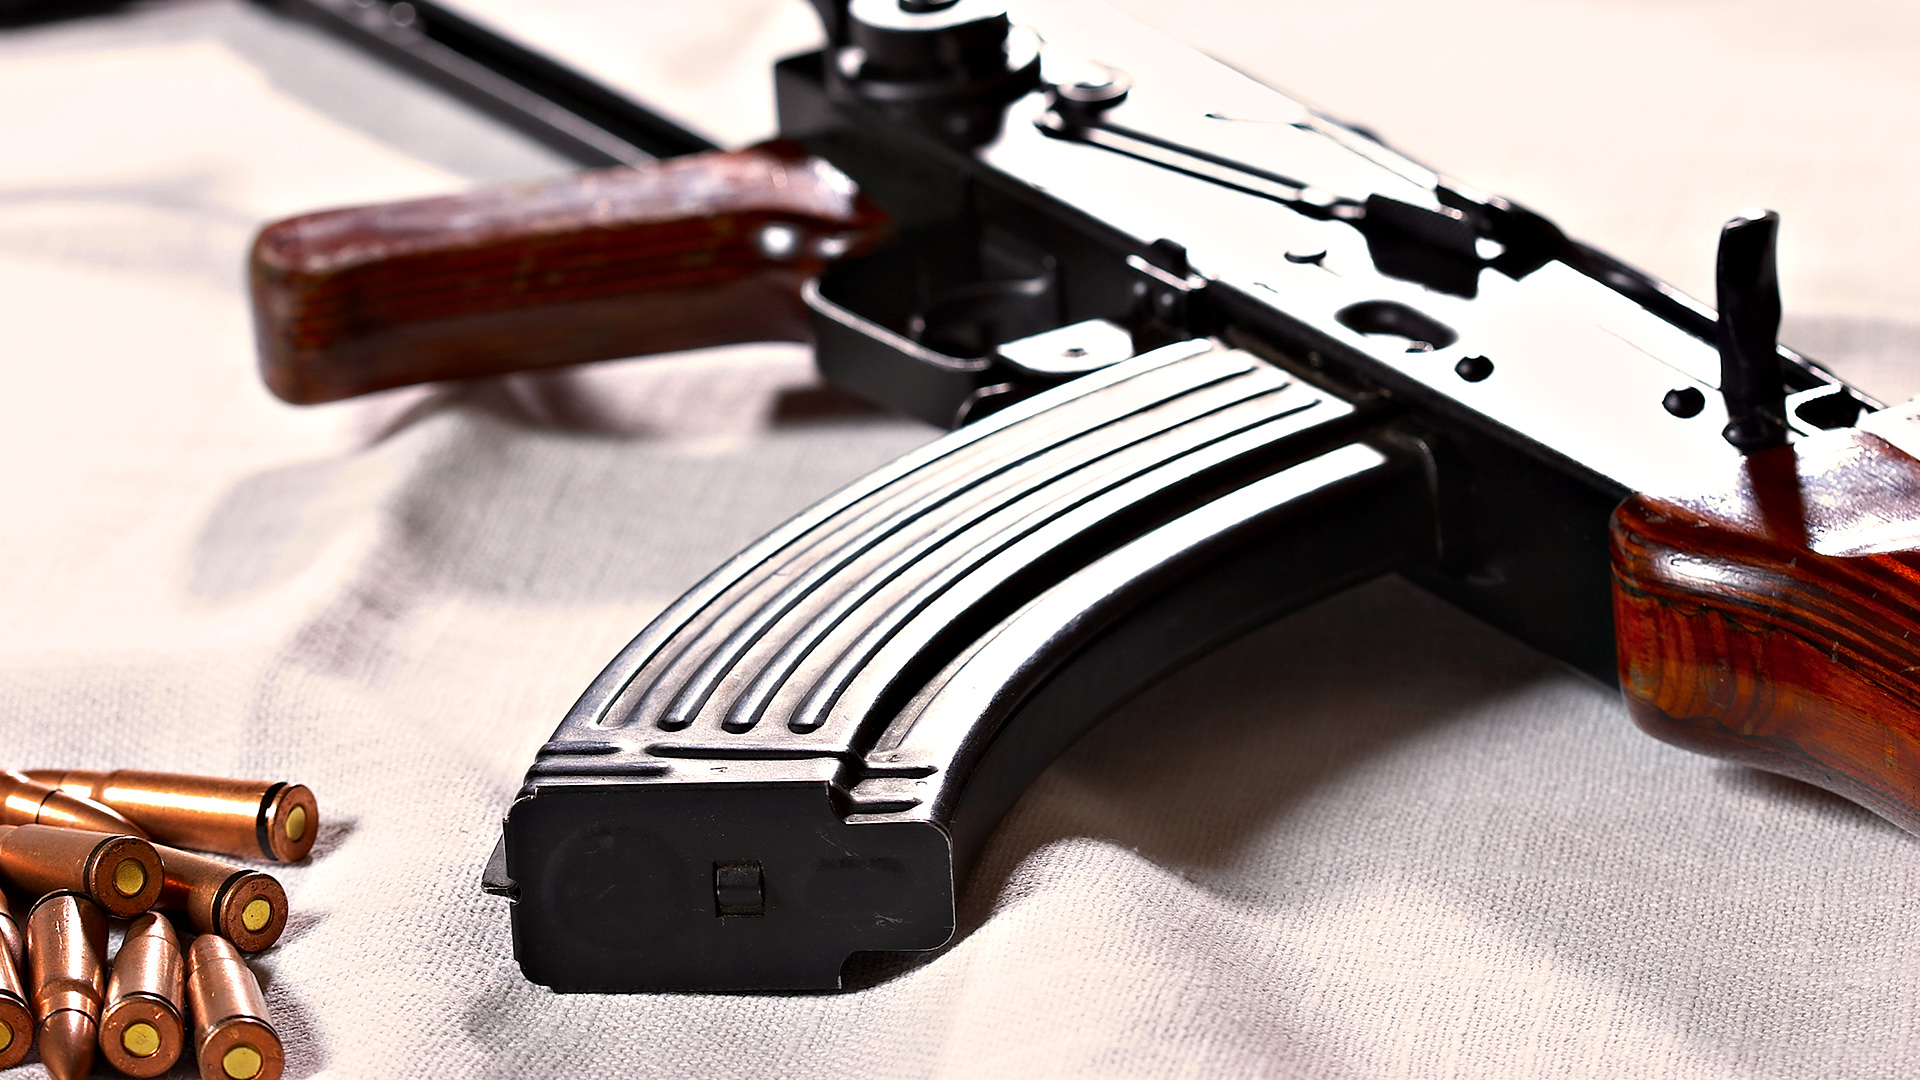 Kalashnikov Rifle Desktop Wallpaper On Latoro